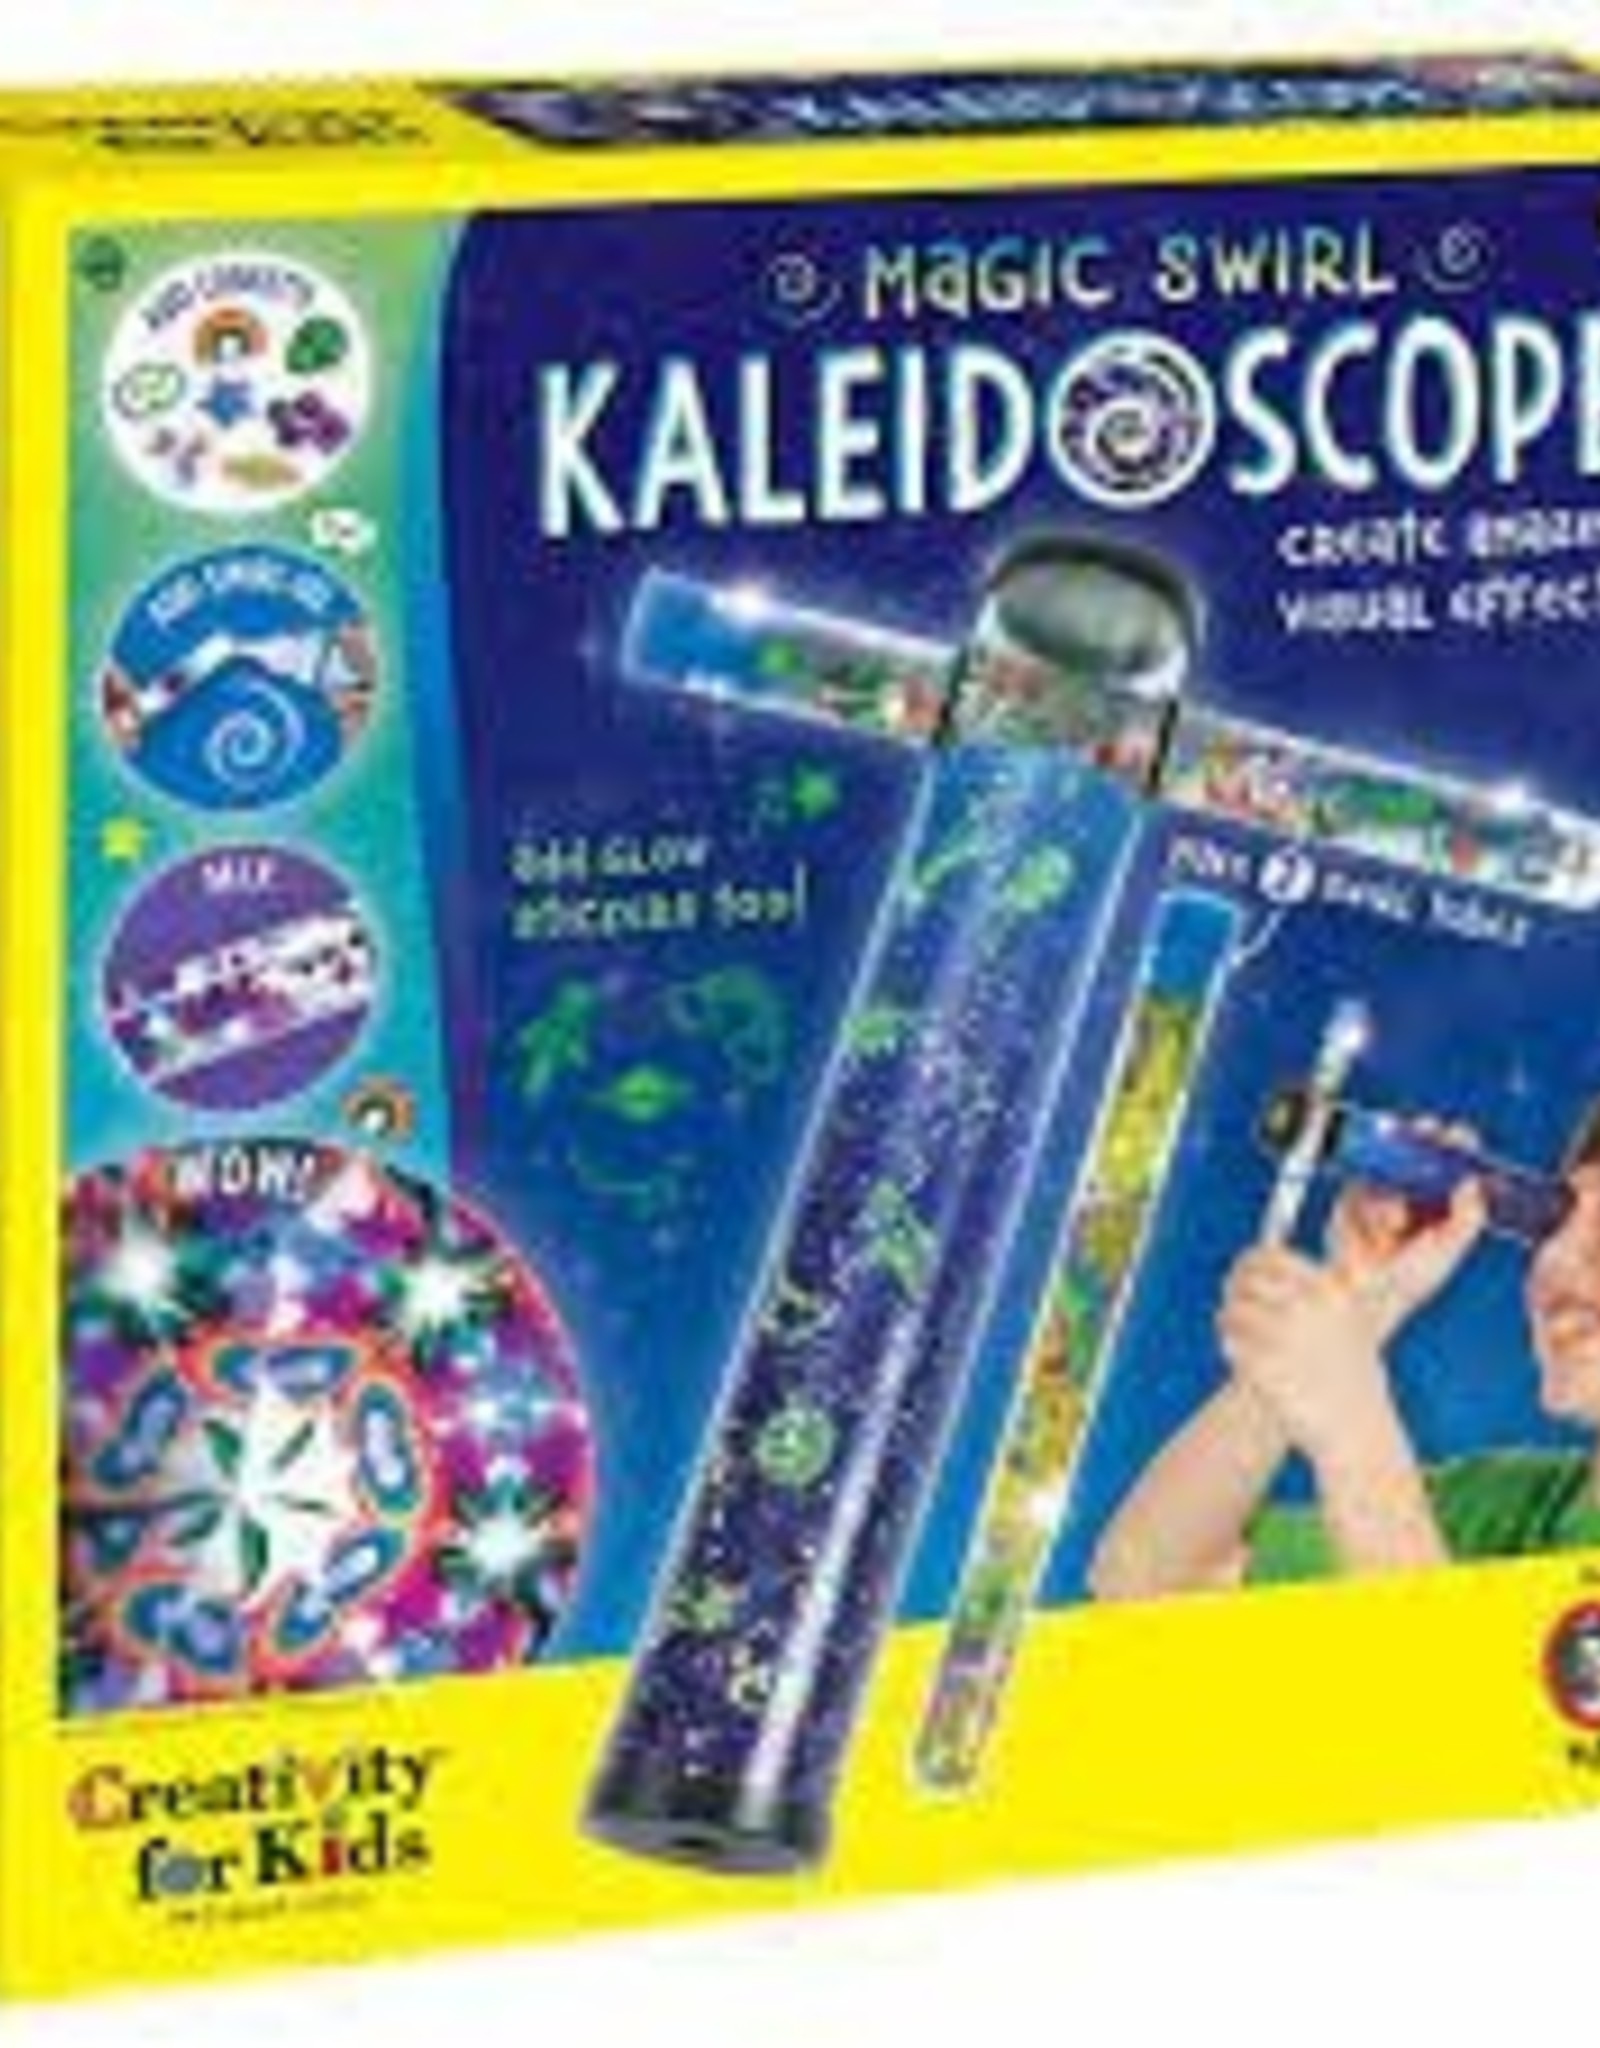 CREATIVITY FOR KIDS MAGIC SWIRL KALEIDOSCOPE